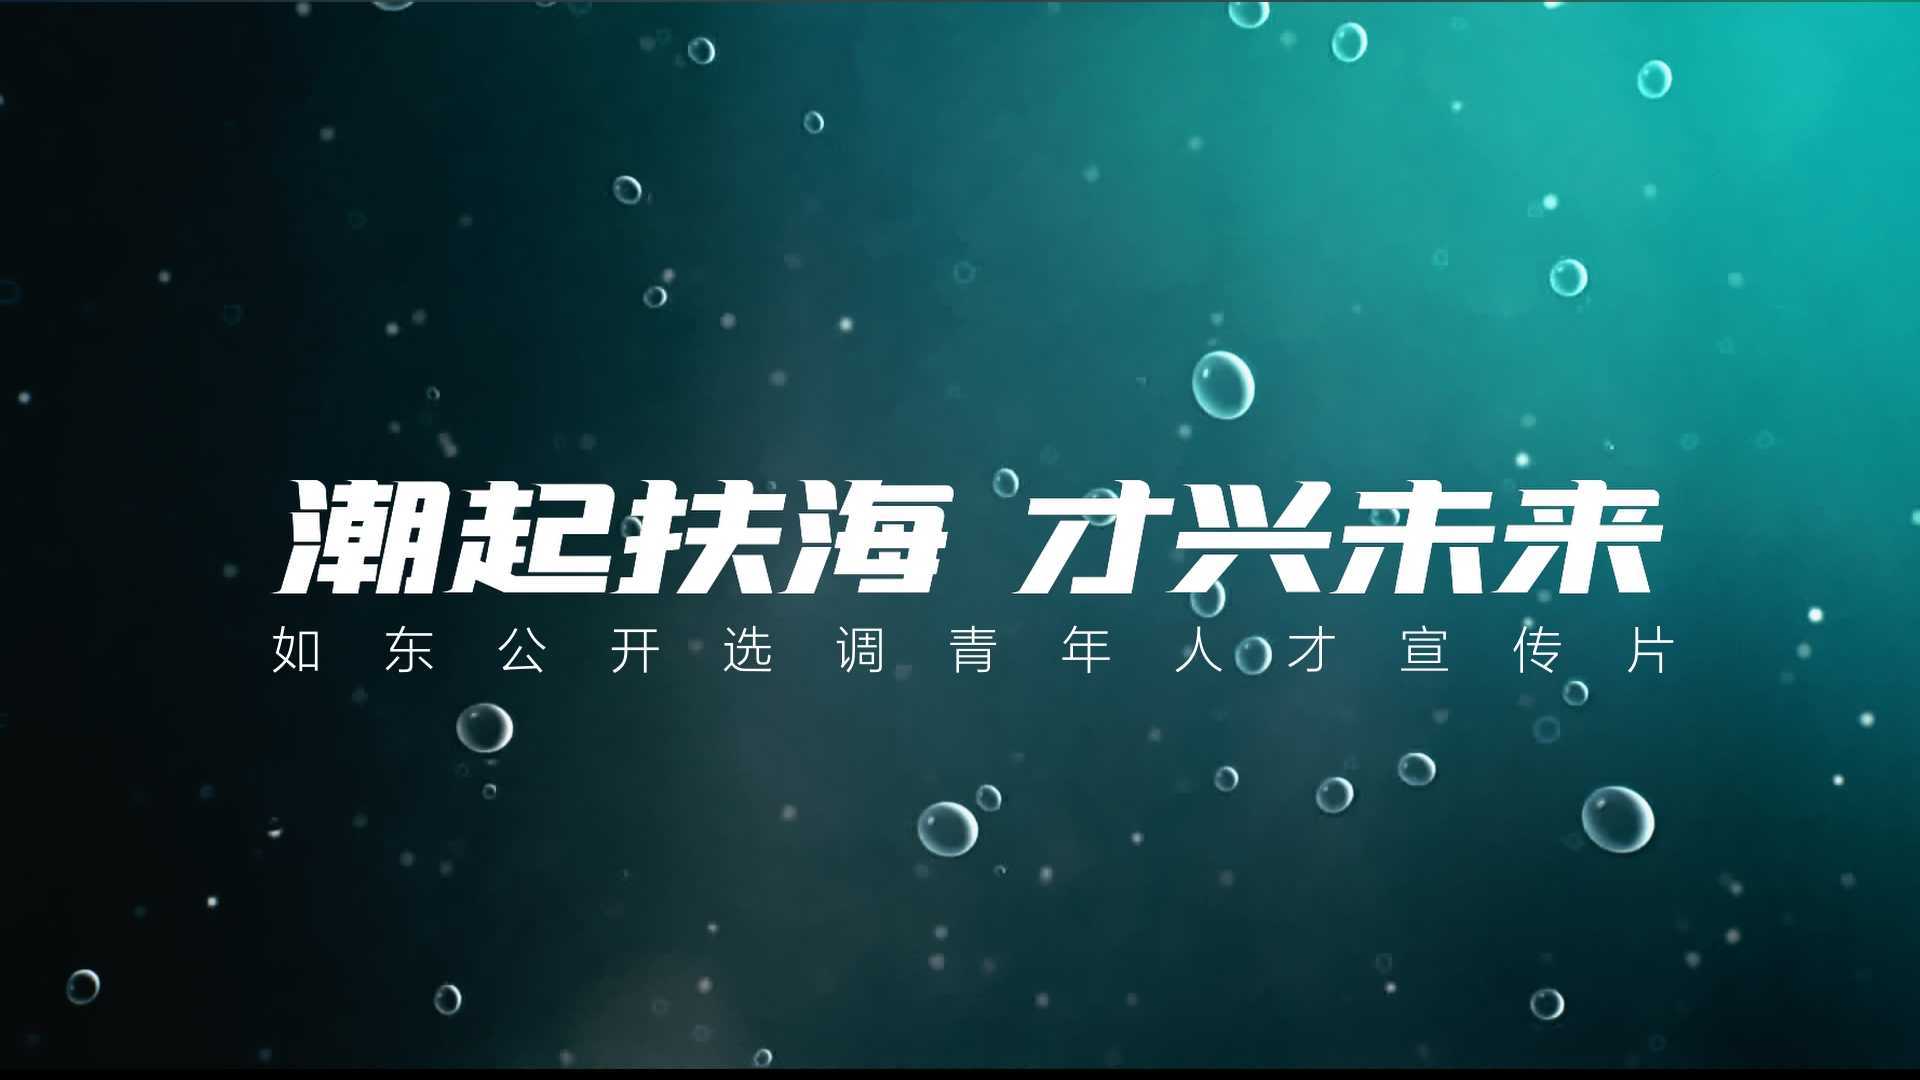 南通如东选调宣传片 -「潮起扶海 才兴未来」